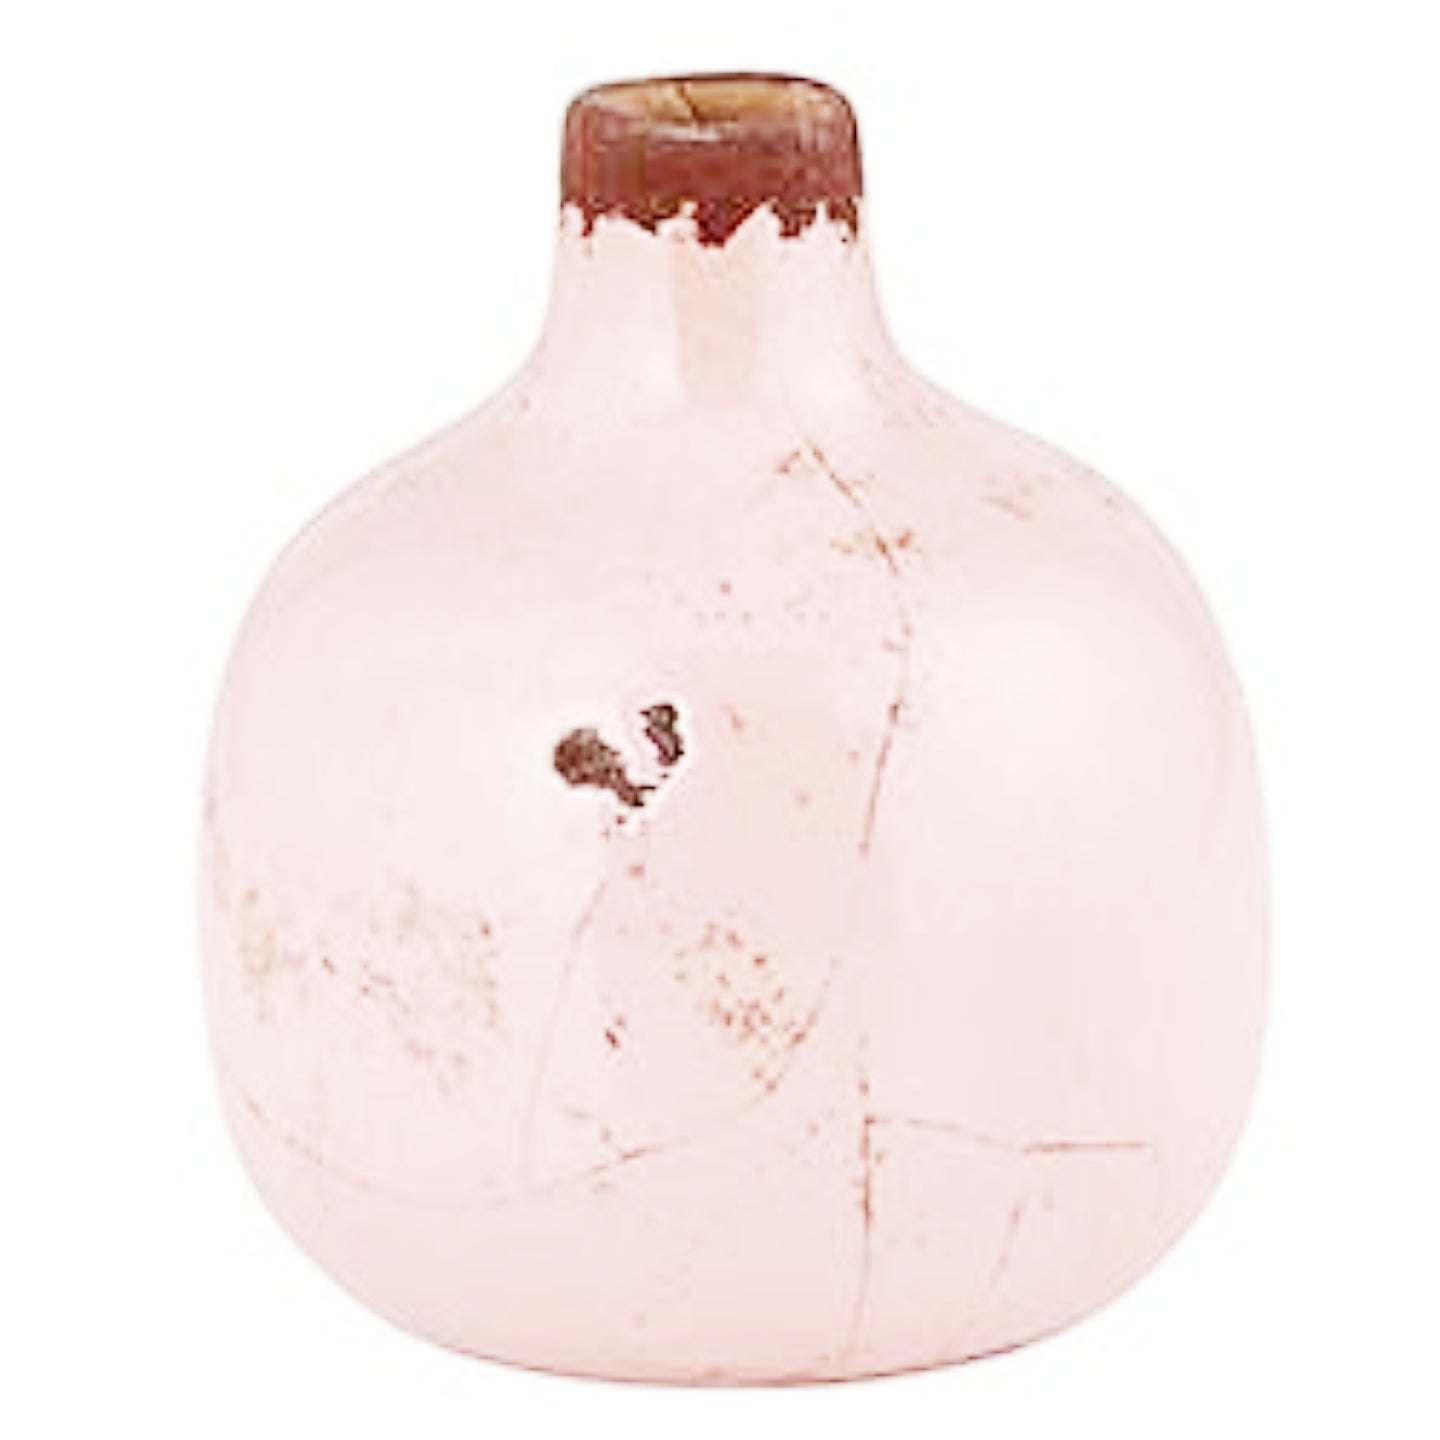 Aged Mini Bud Vase - Light Pink